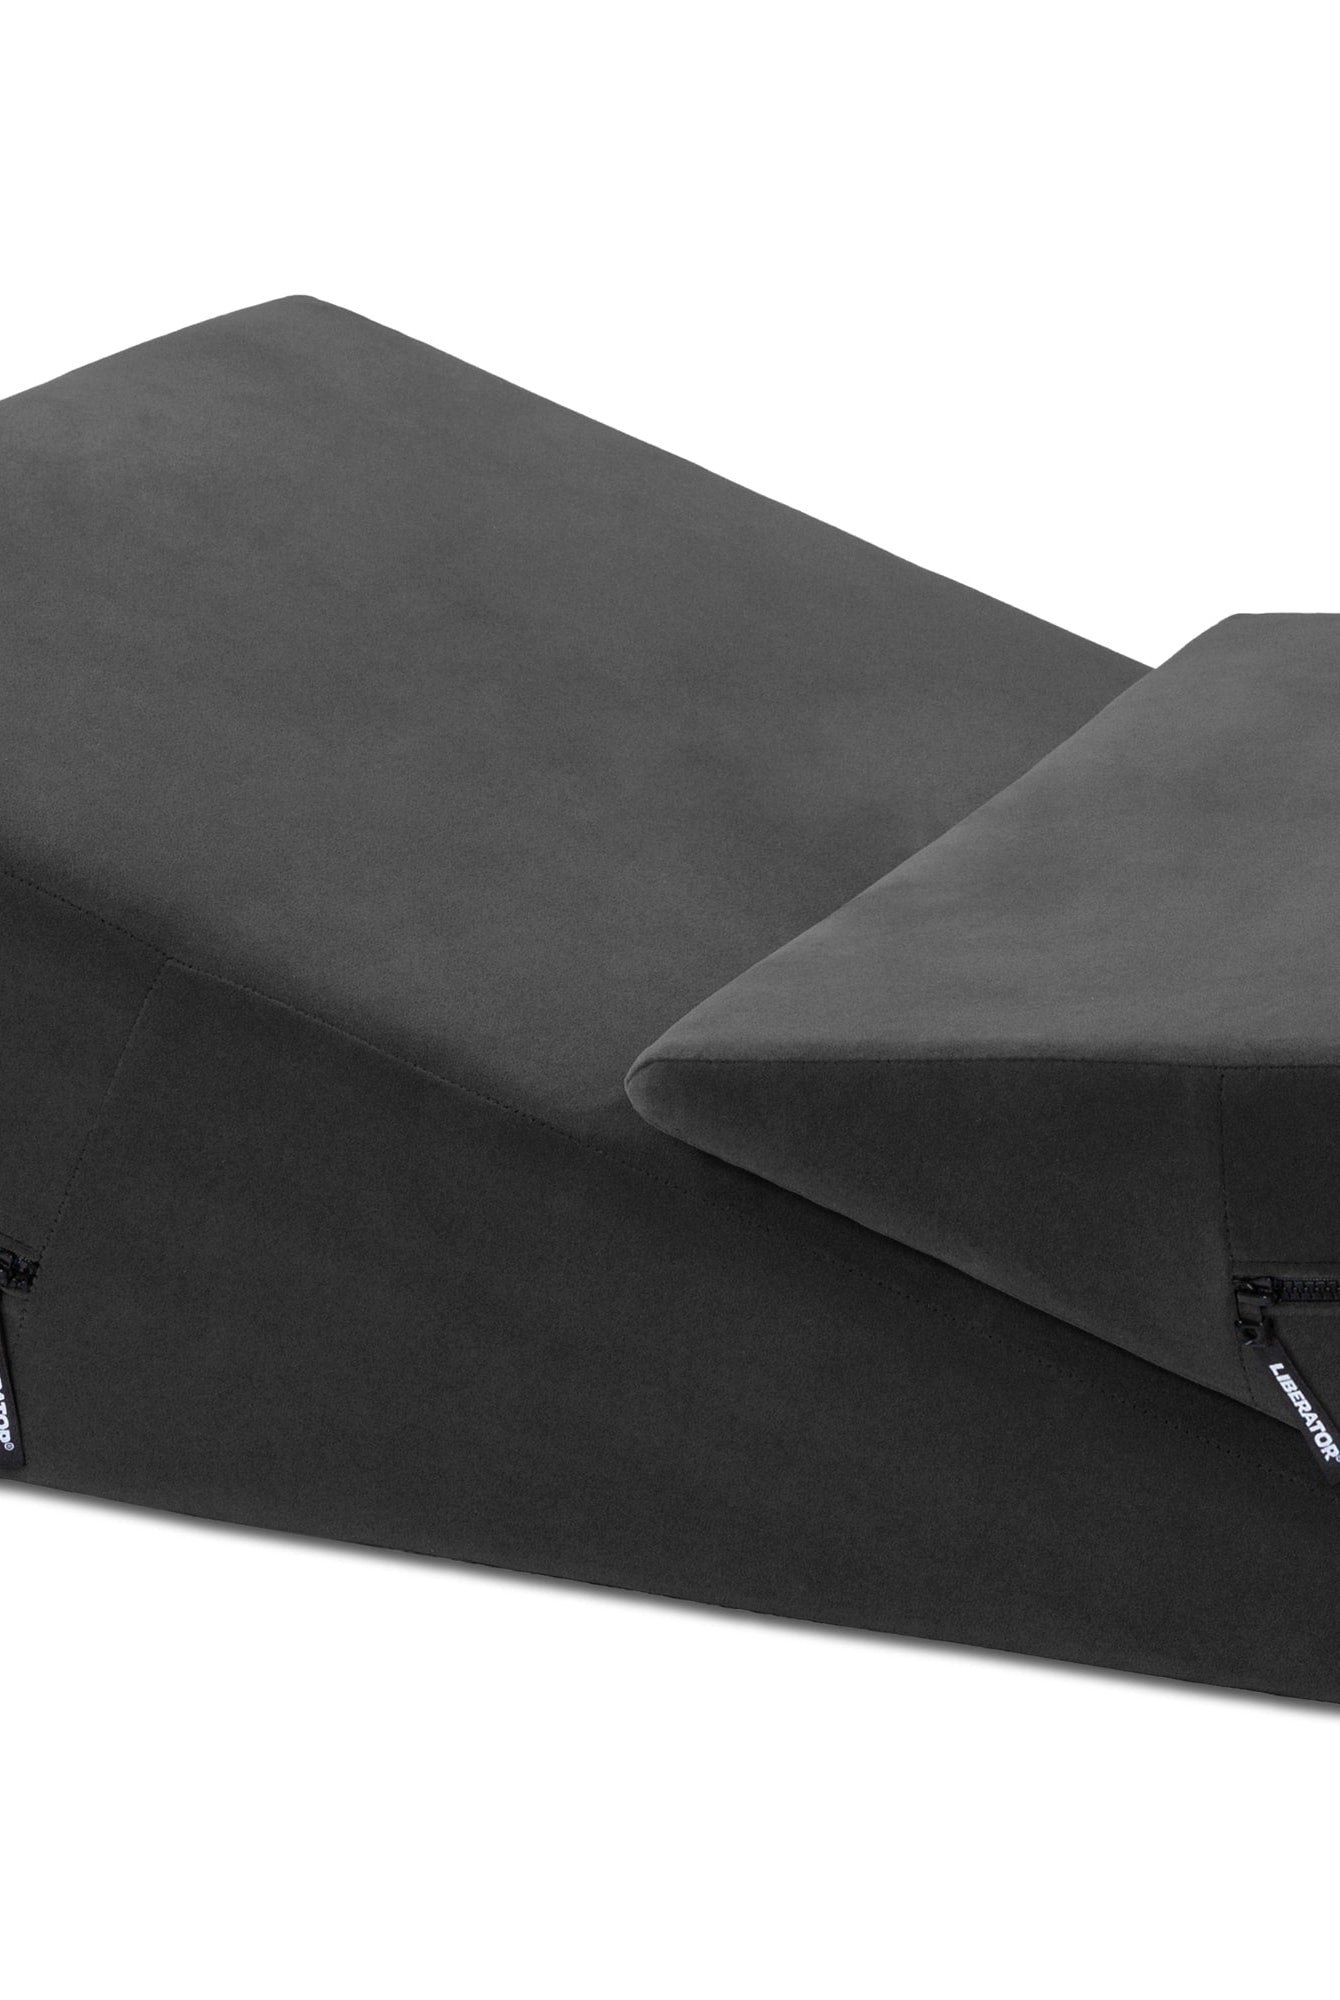 Wedge/Ramp Combo Male Packaging Black Microfiber - ACME Pleasure